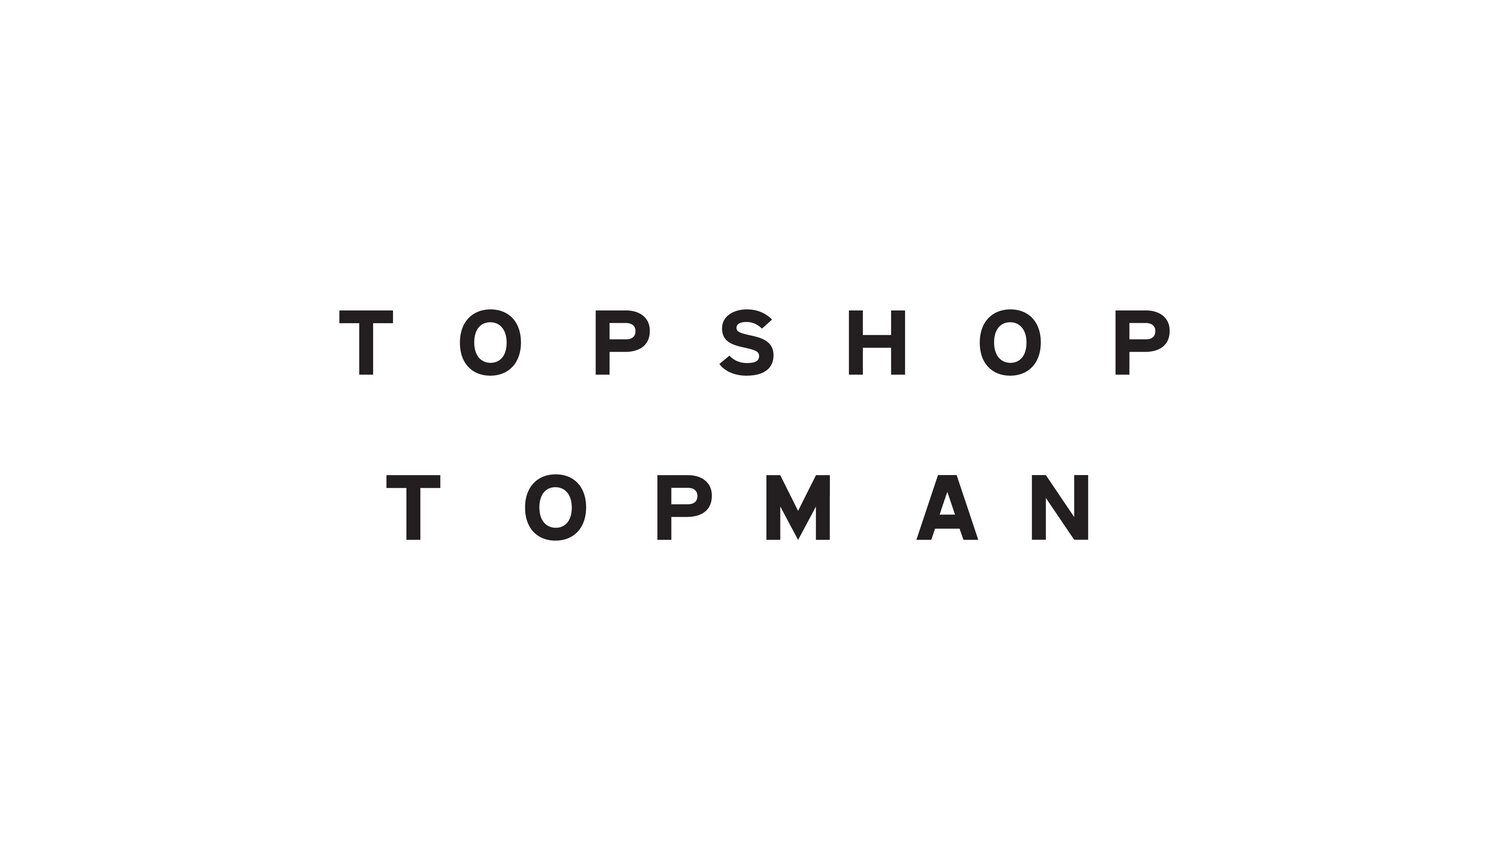 Topshop Topman — Abstract Studio - London Design Agency. Disciplines ...